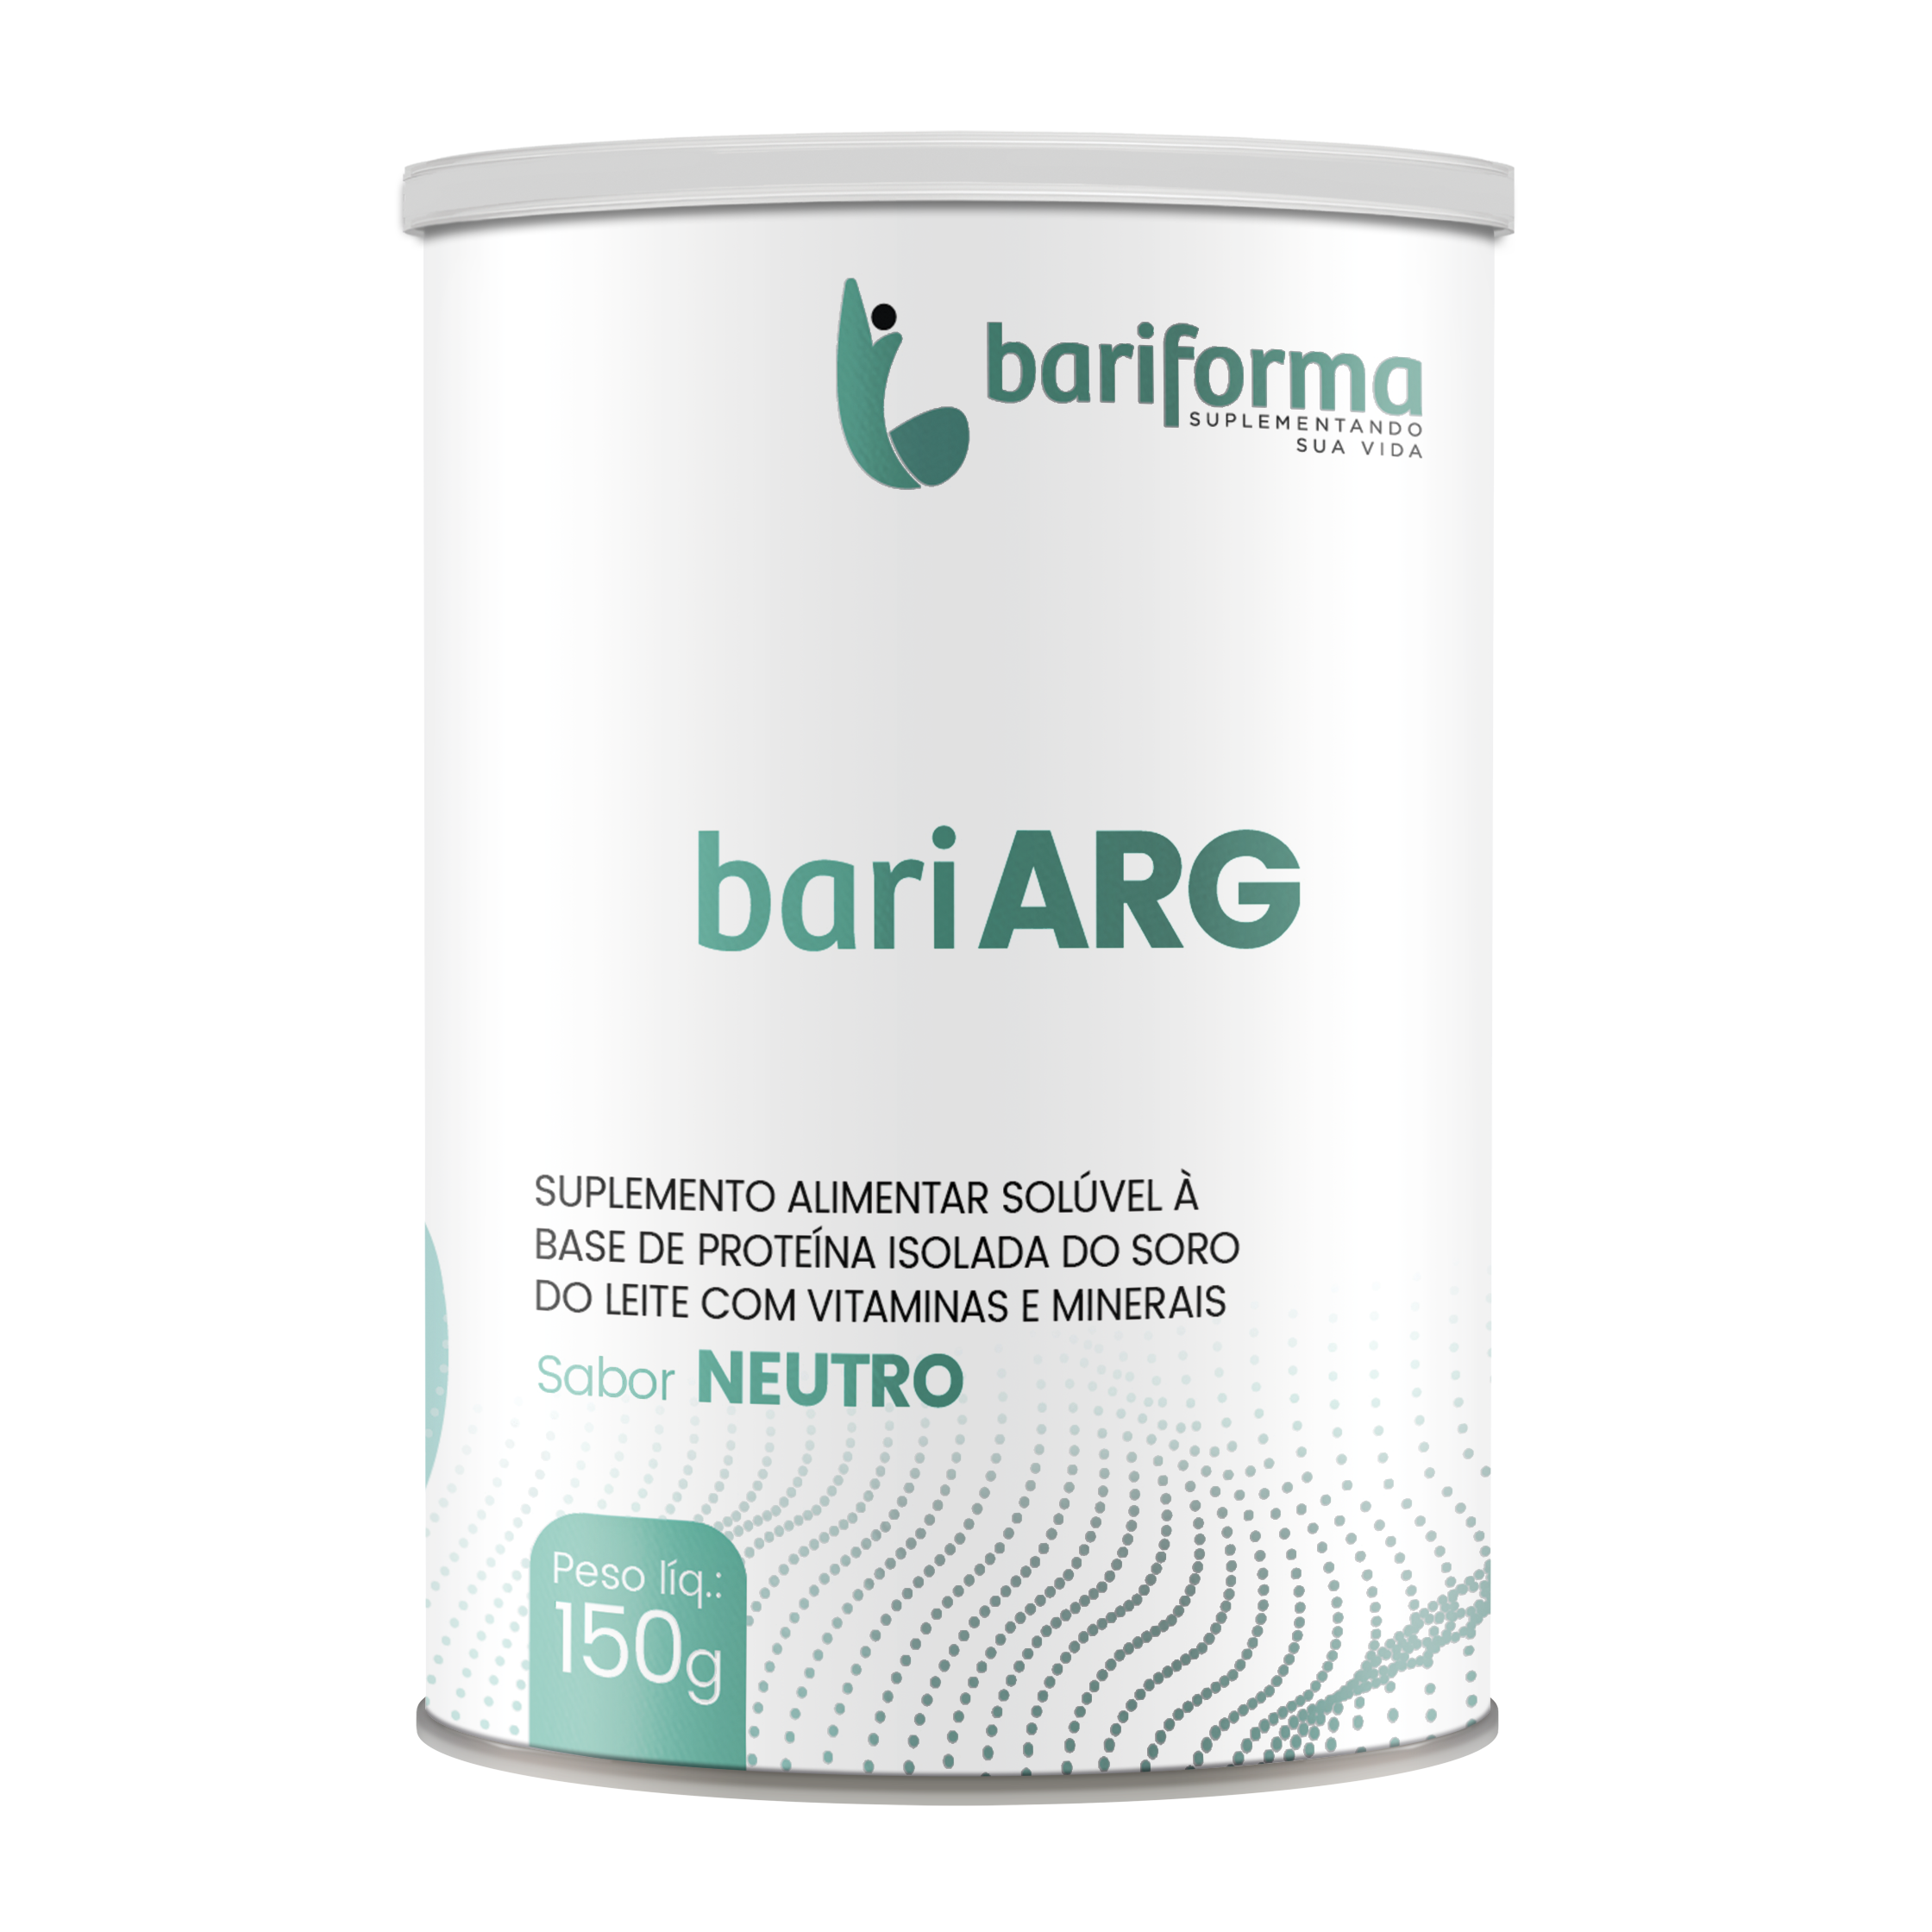 bari Arg - Lata 150g - Bariforma   